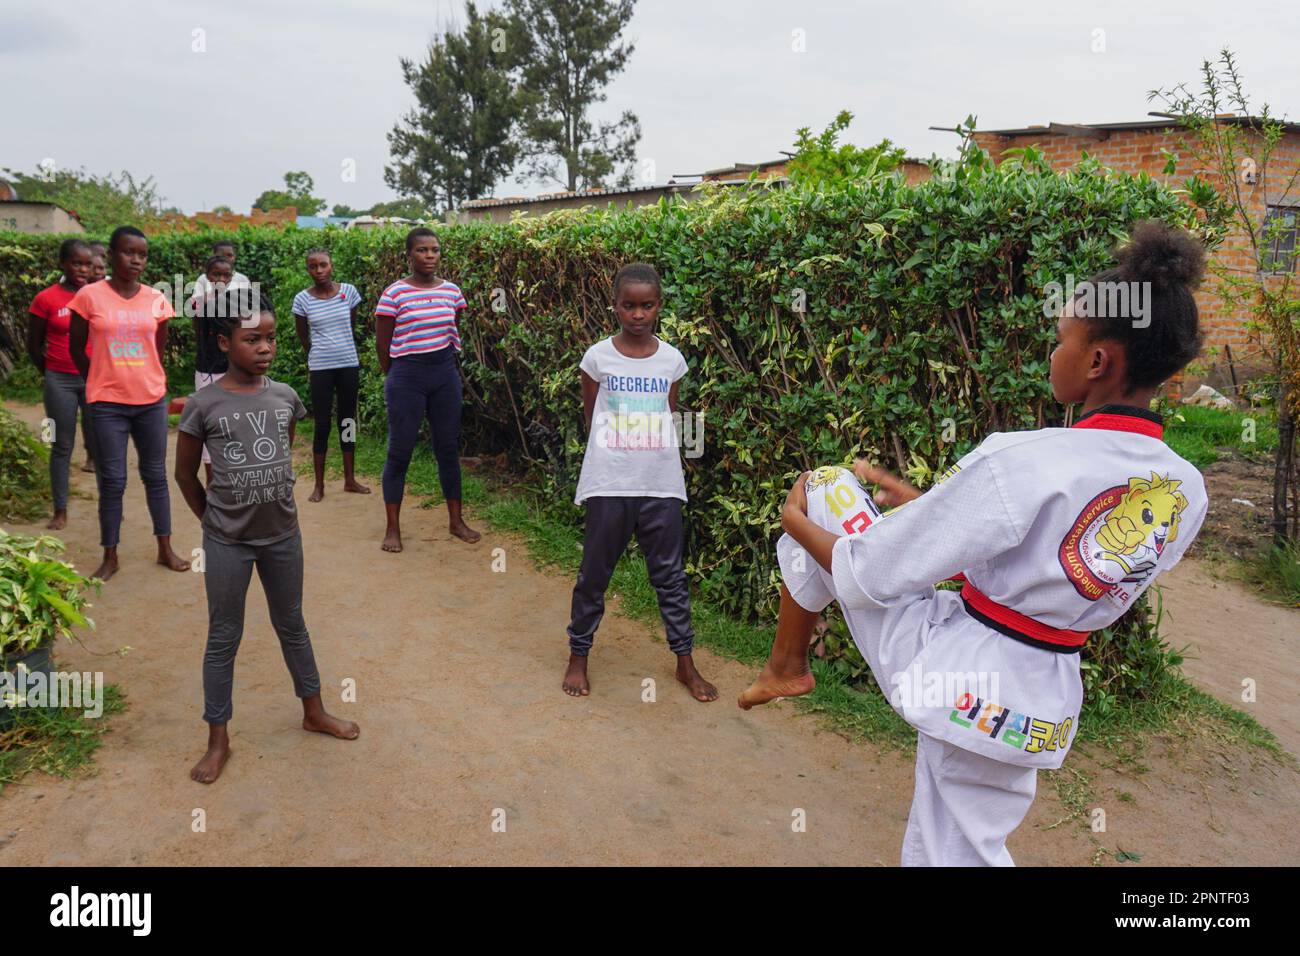 Natsiraishe Maritsa, 18, zeigt am 22. November 2021 in Epworth, Simbabwe, eine taekwondo-Haltung. Maritsa, die an den Wochenenden Teenagern zu Hause die koreanische Kampfkunst beibringt, sagt, Taekwondo erfordert geistige Stärke und Selbstkontrolle. (Vimbai Chinembiri/Global Press Journal) Stockfoto